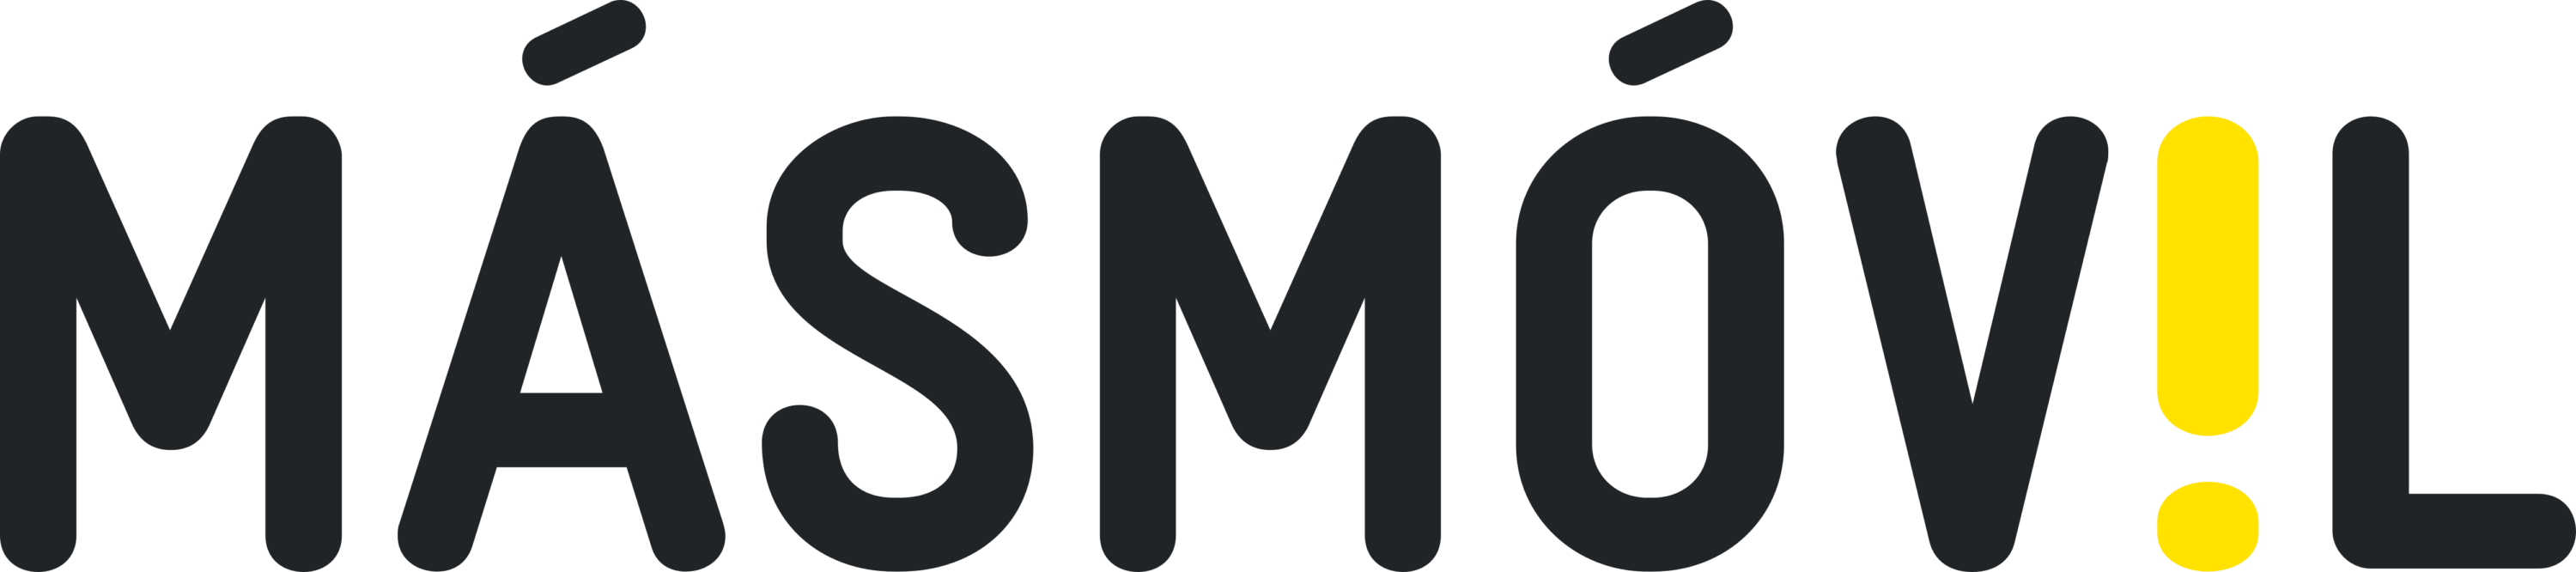 Masmovil Logo